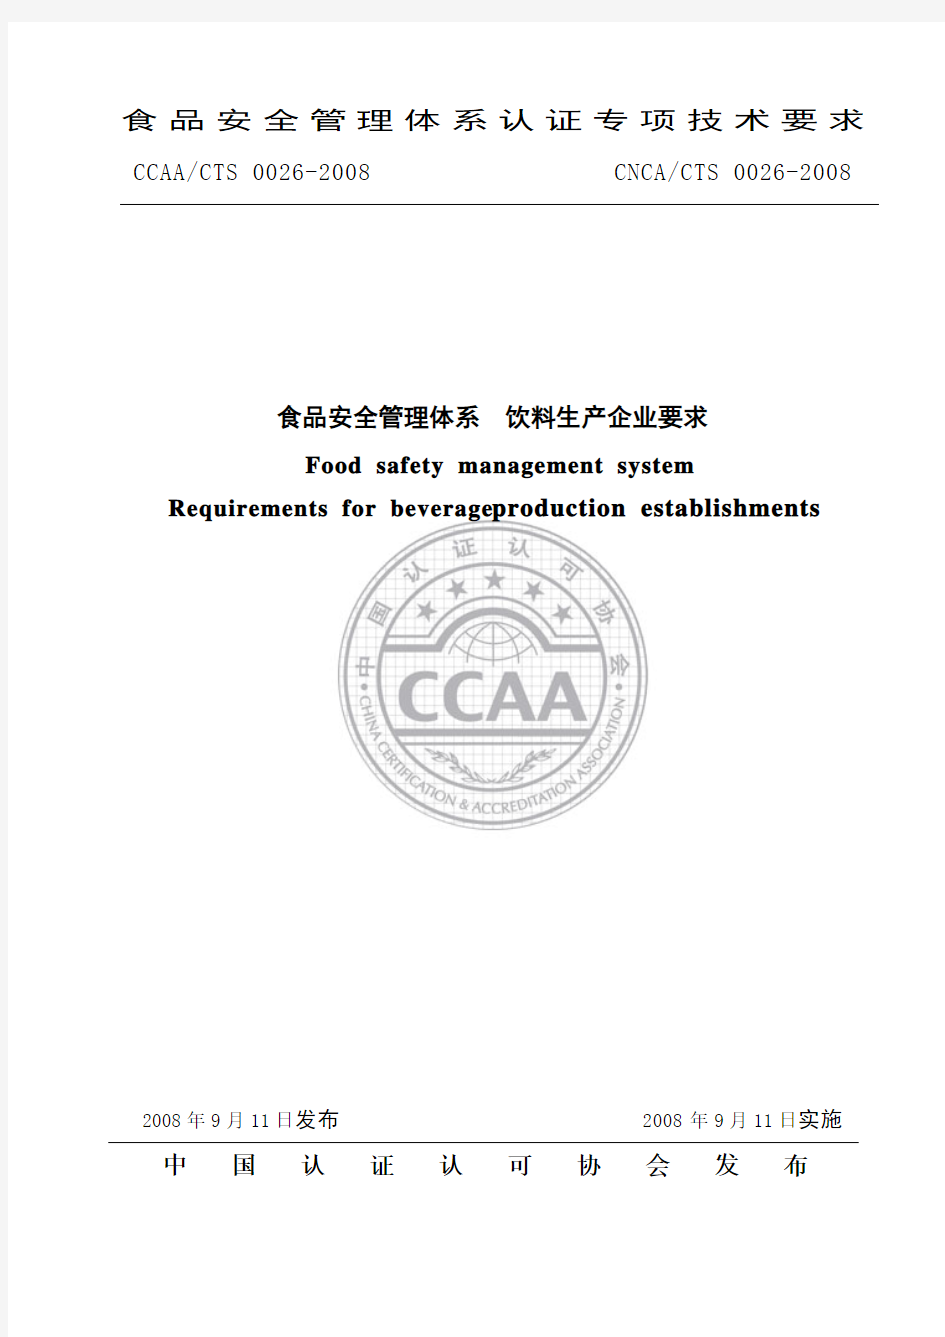 CCAACTS 0026-2008  食品安全管理体系 饮料生产企业要求